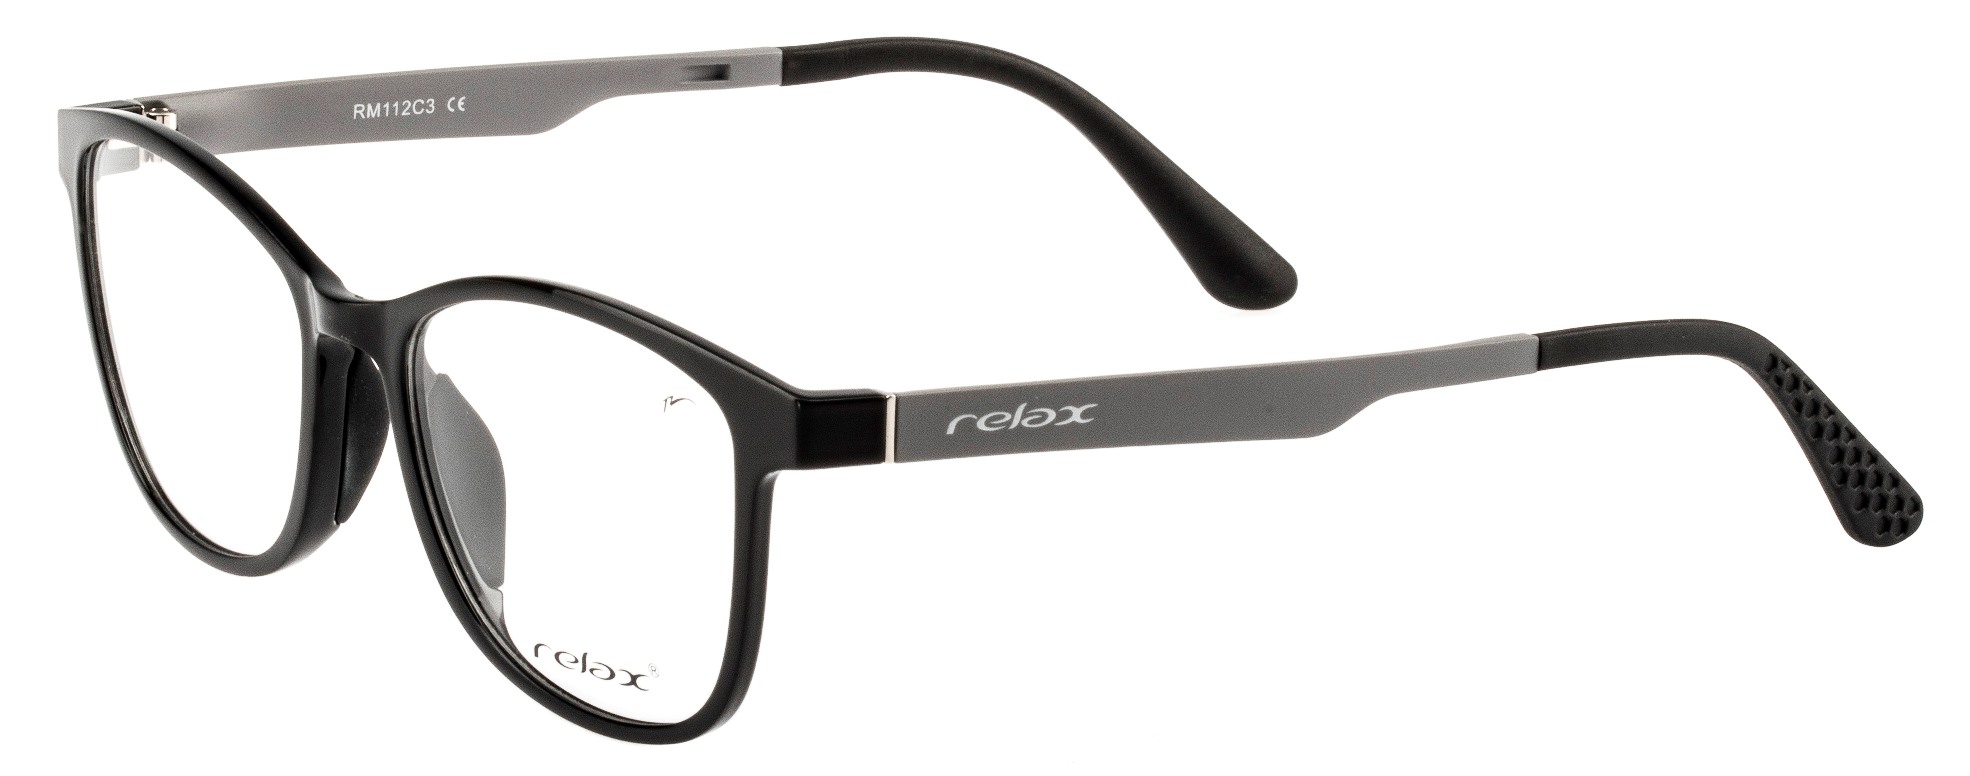 Optical frames Relax Ocun RM112C3